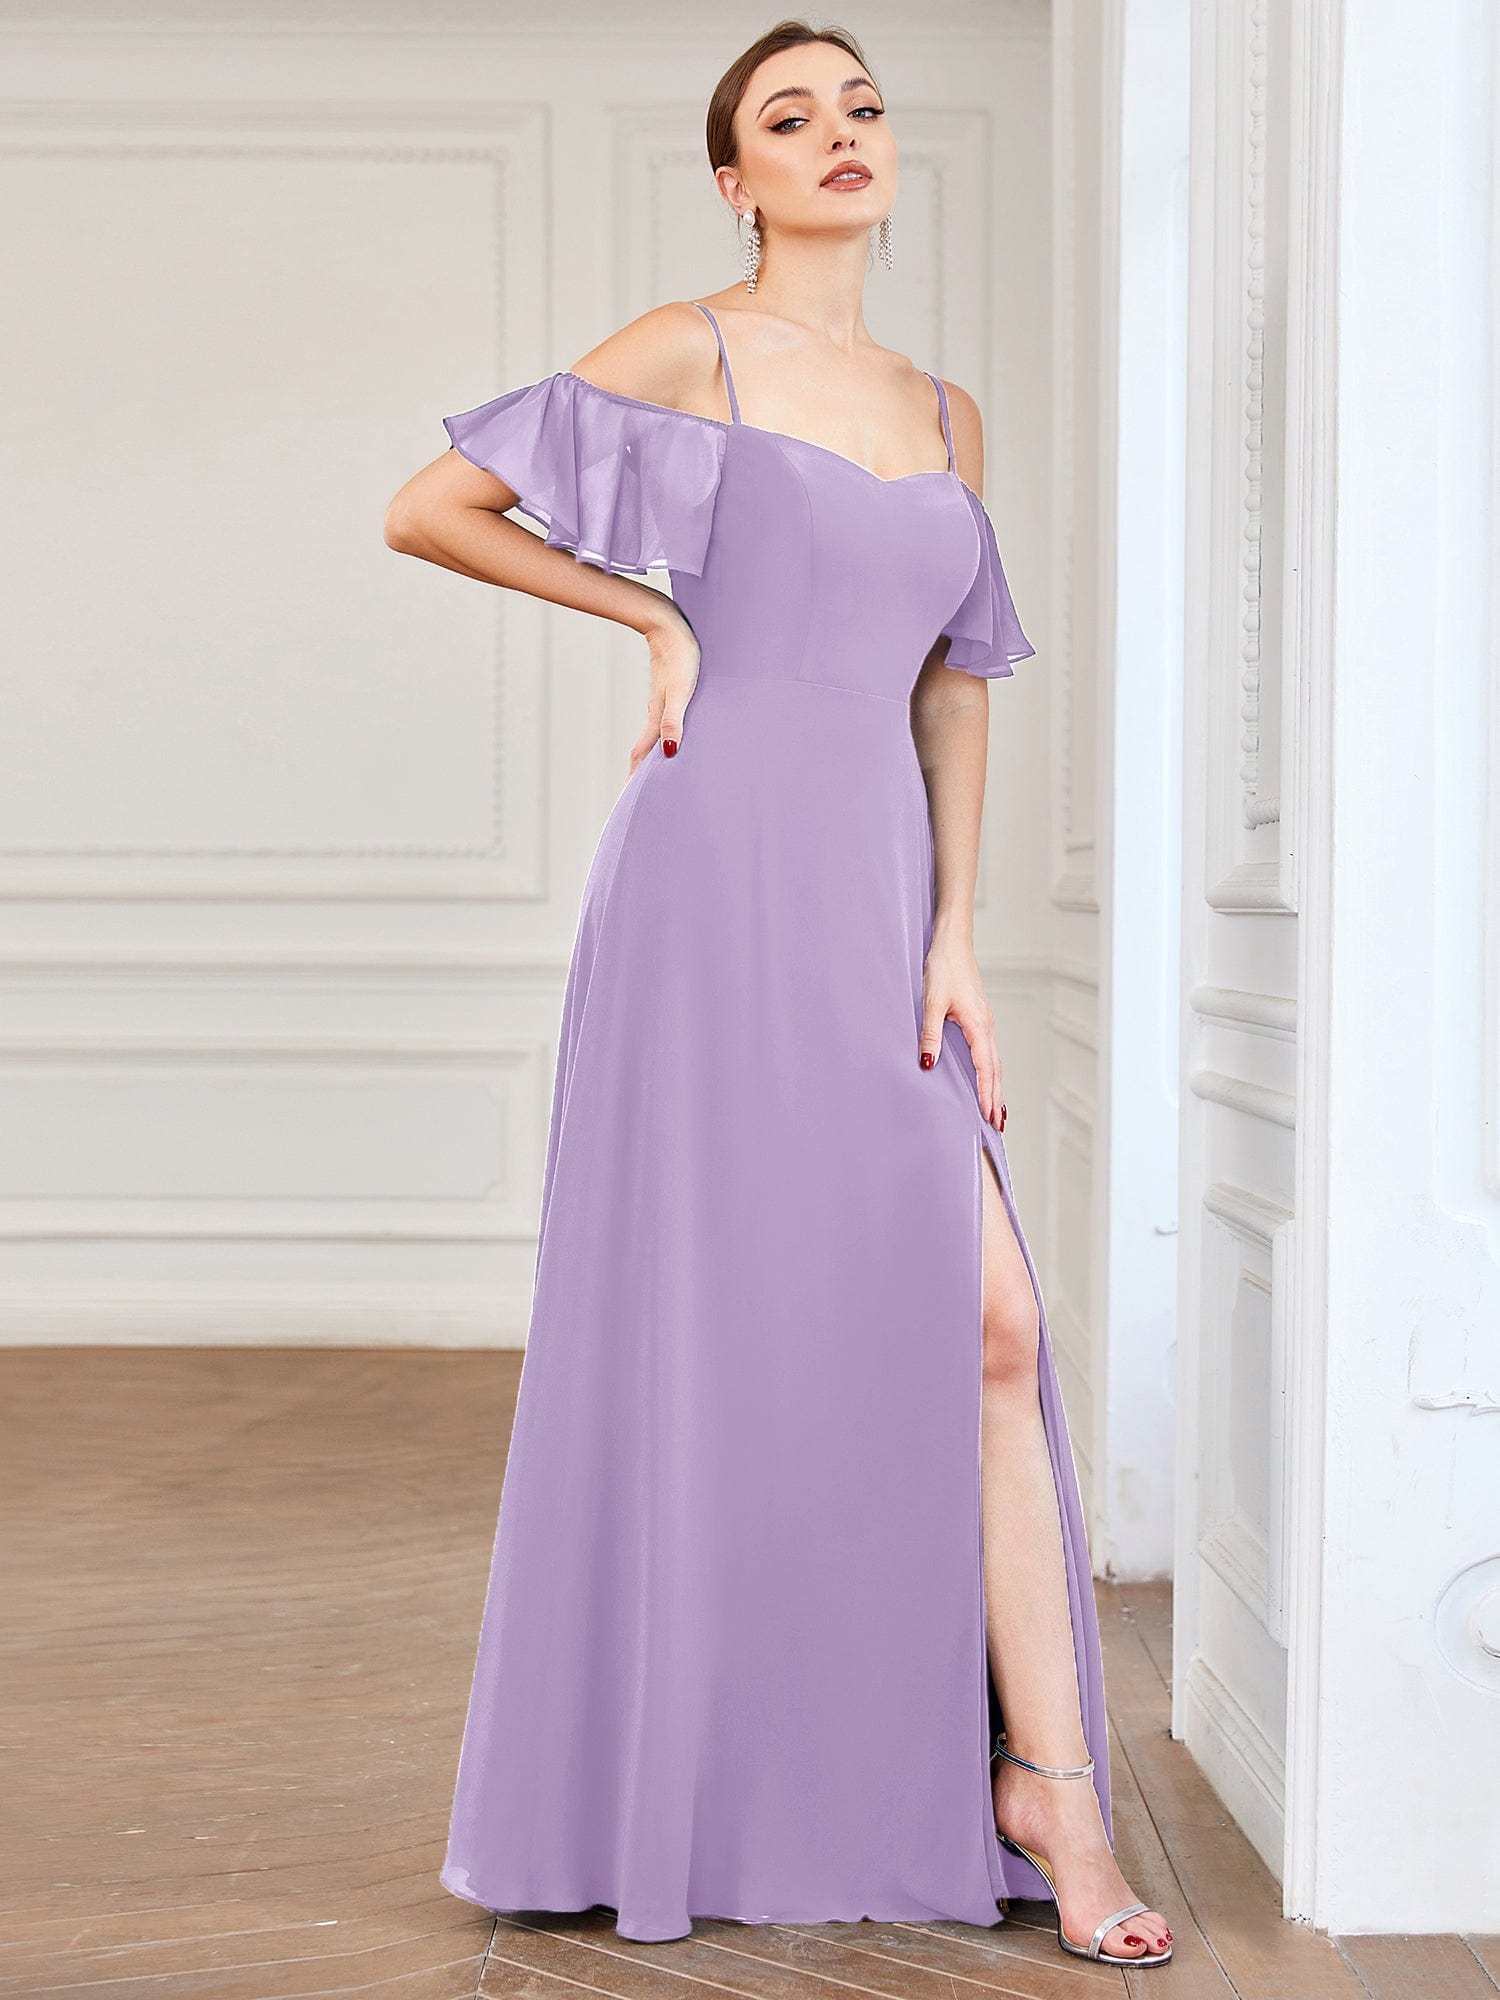 Custom Size Cold-Shoulder Floor Length Bridesmaid Dress with Side Slit